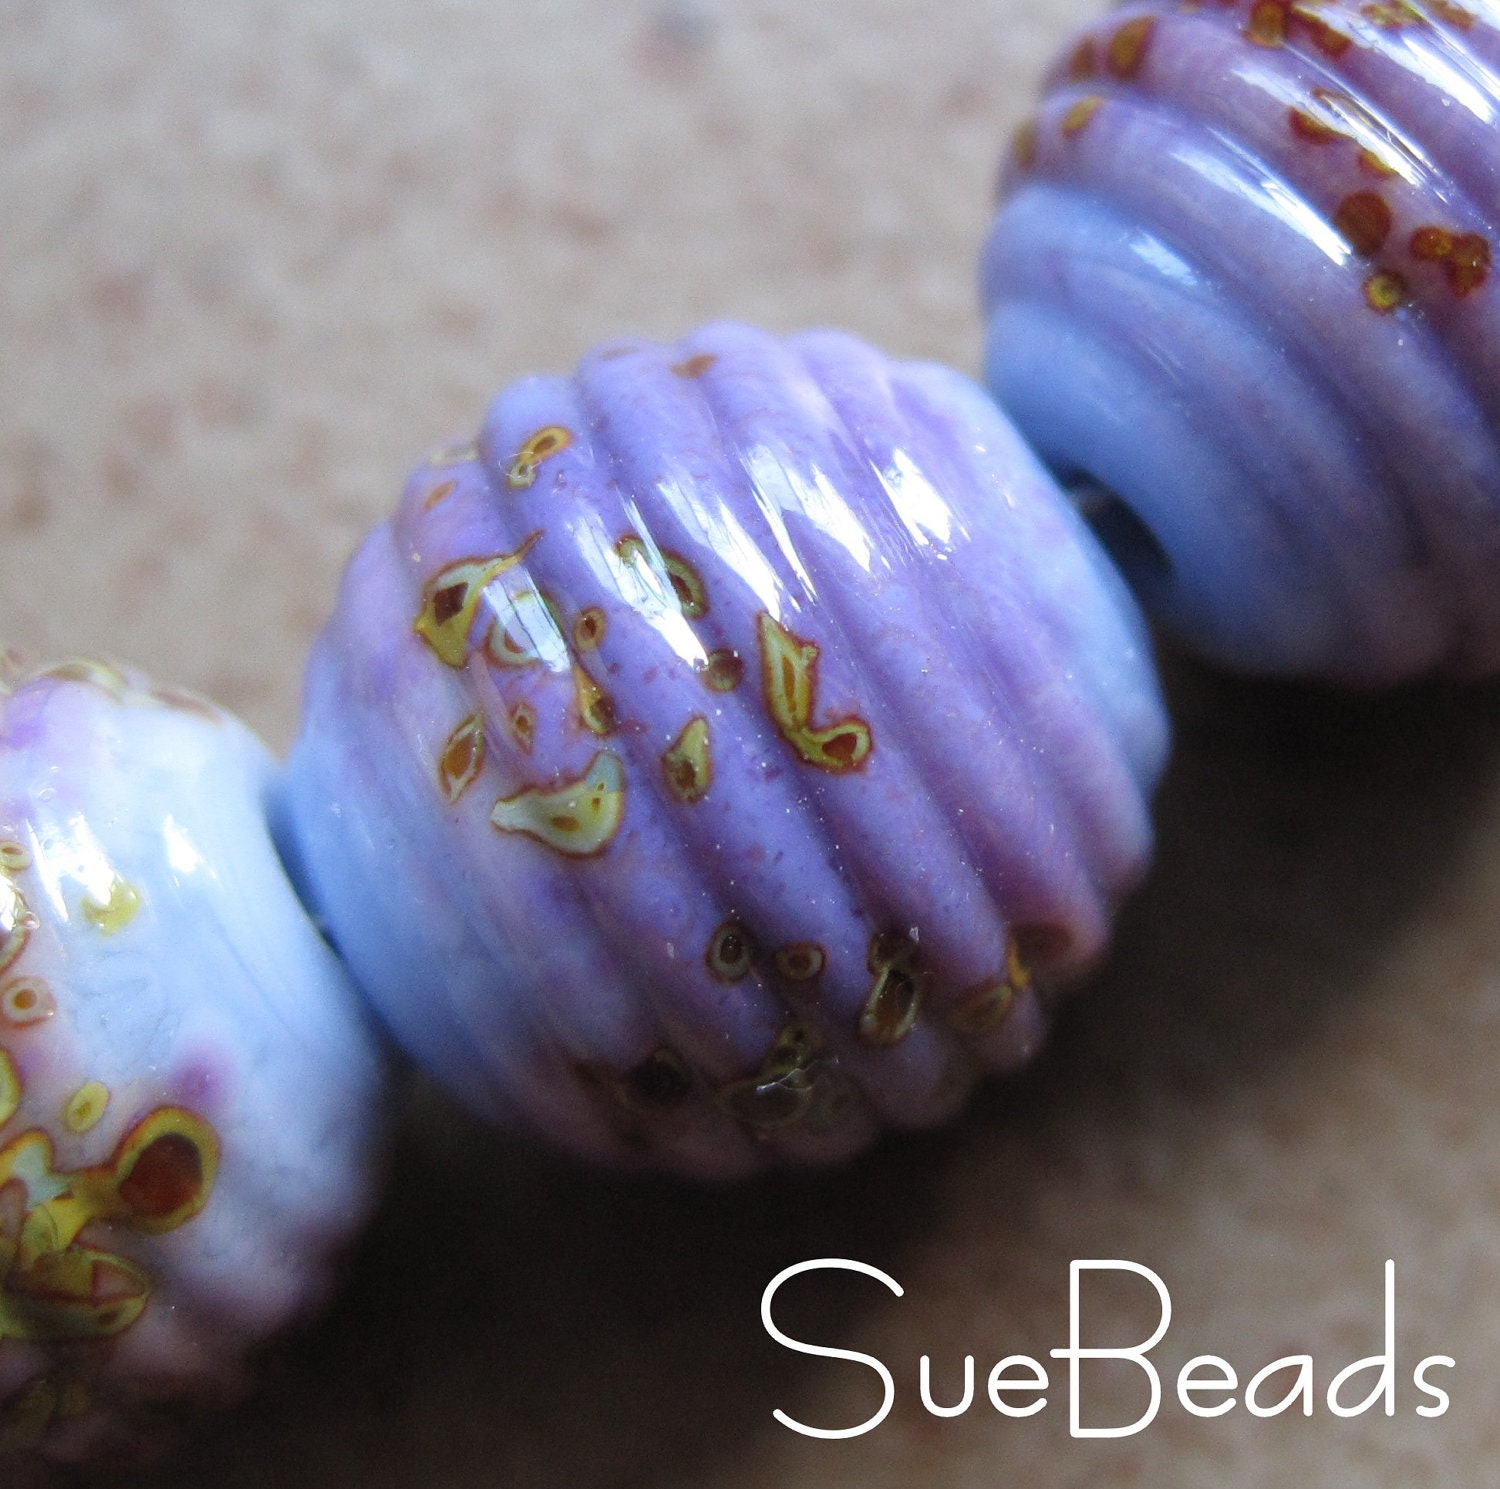 Lampwork Beads - SueBeads - Ribbed Round Beads - Wedgewood Blue Autumn Wonder Beads - Handmade Lampwork Beads - SRA M67 - suebeads